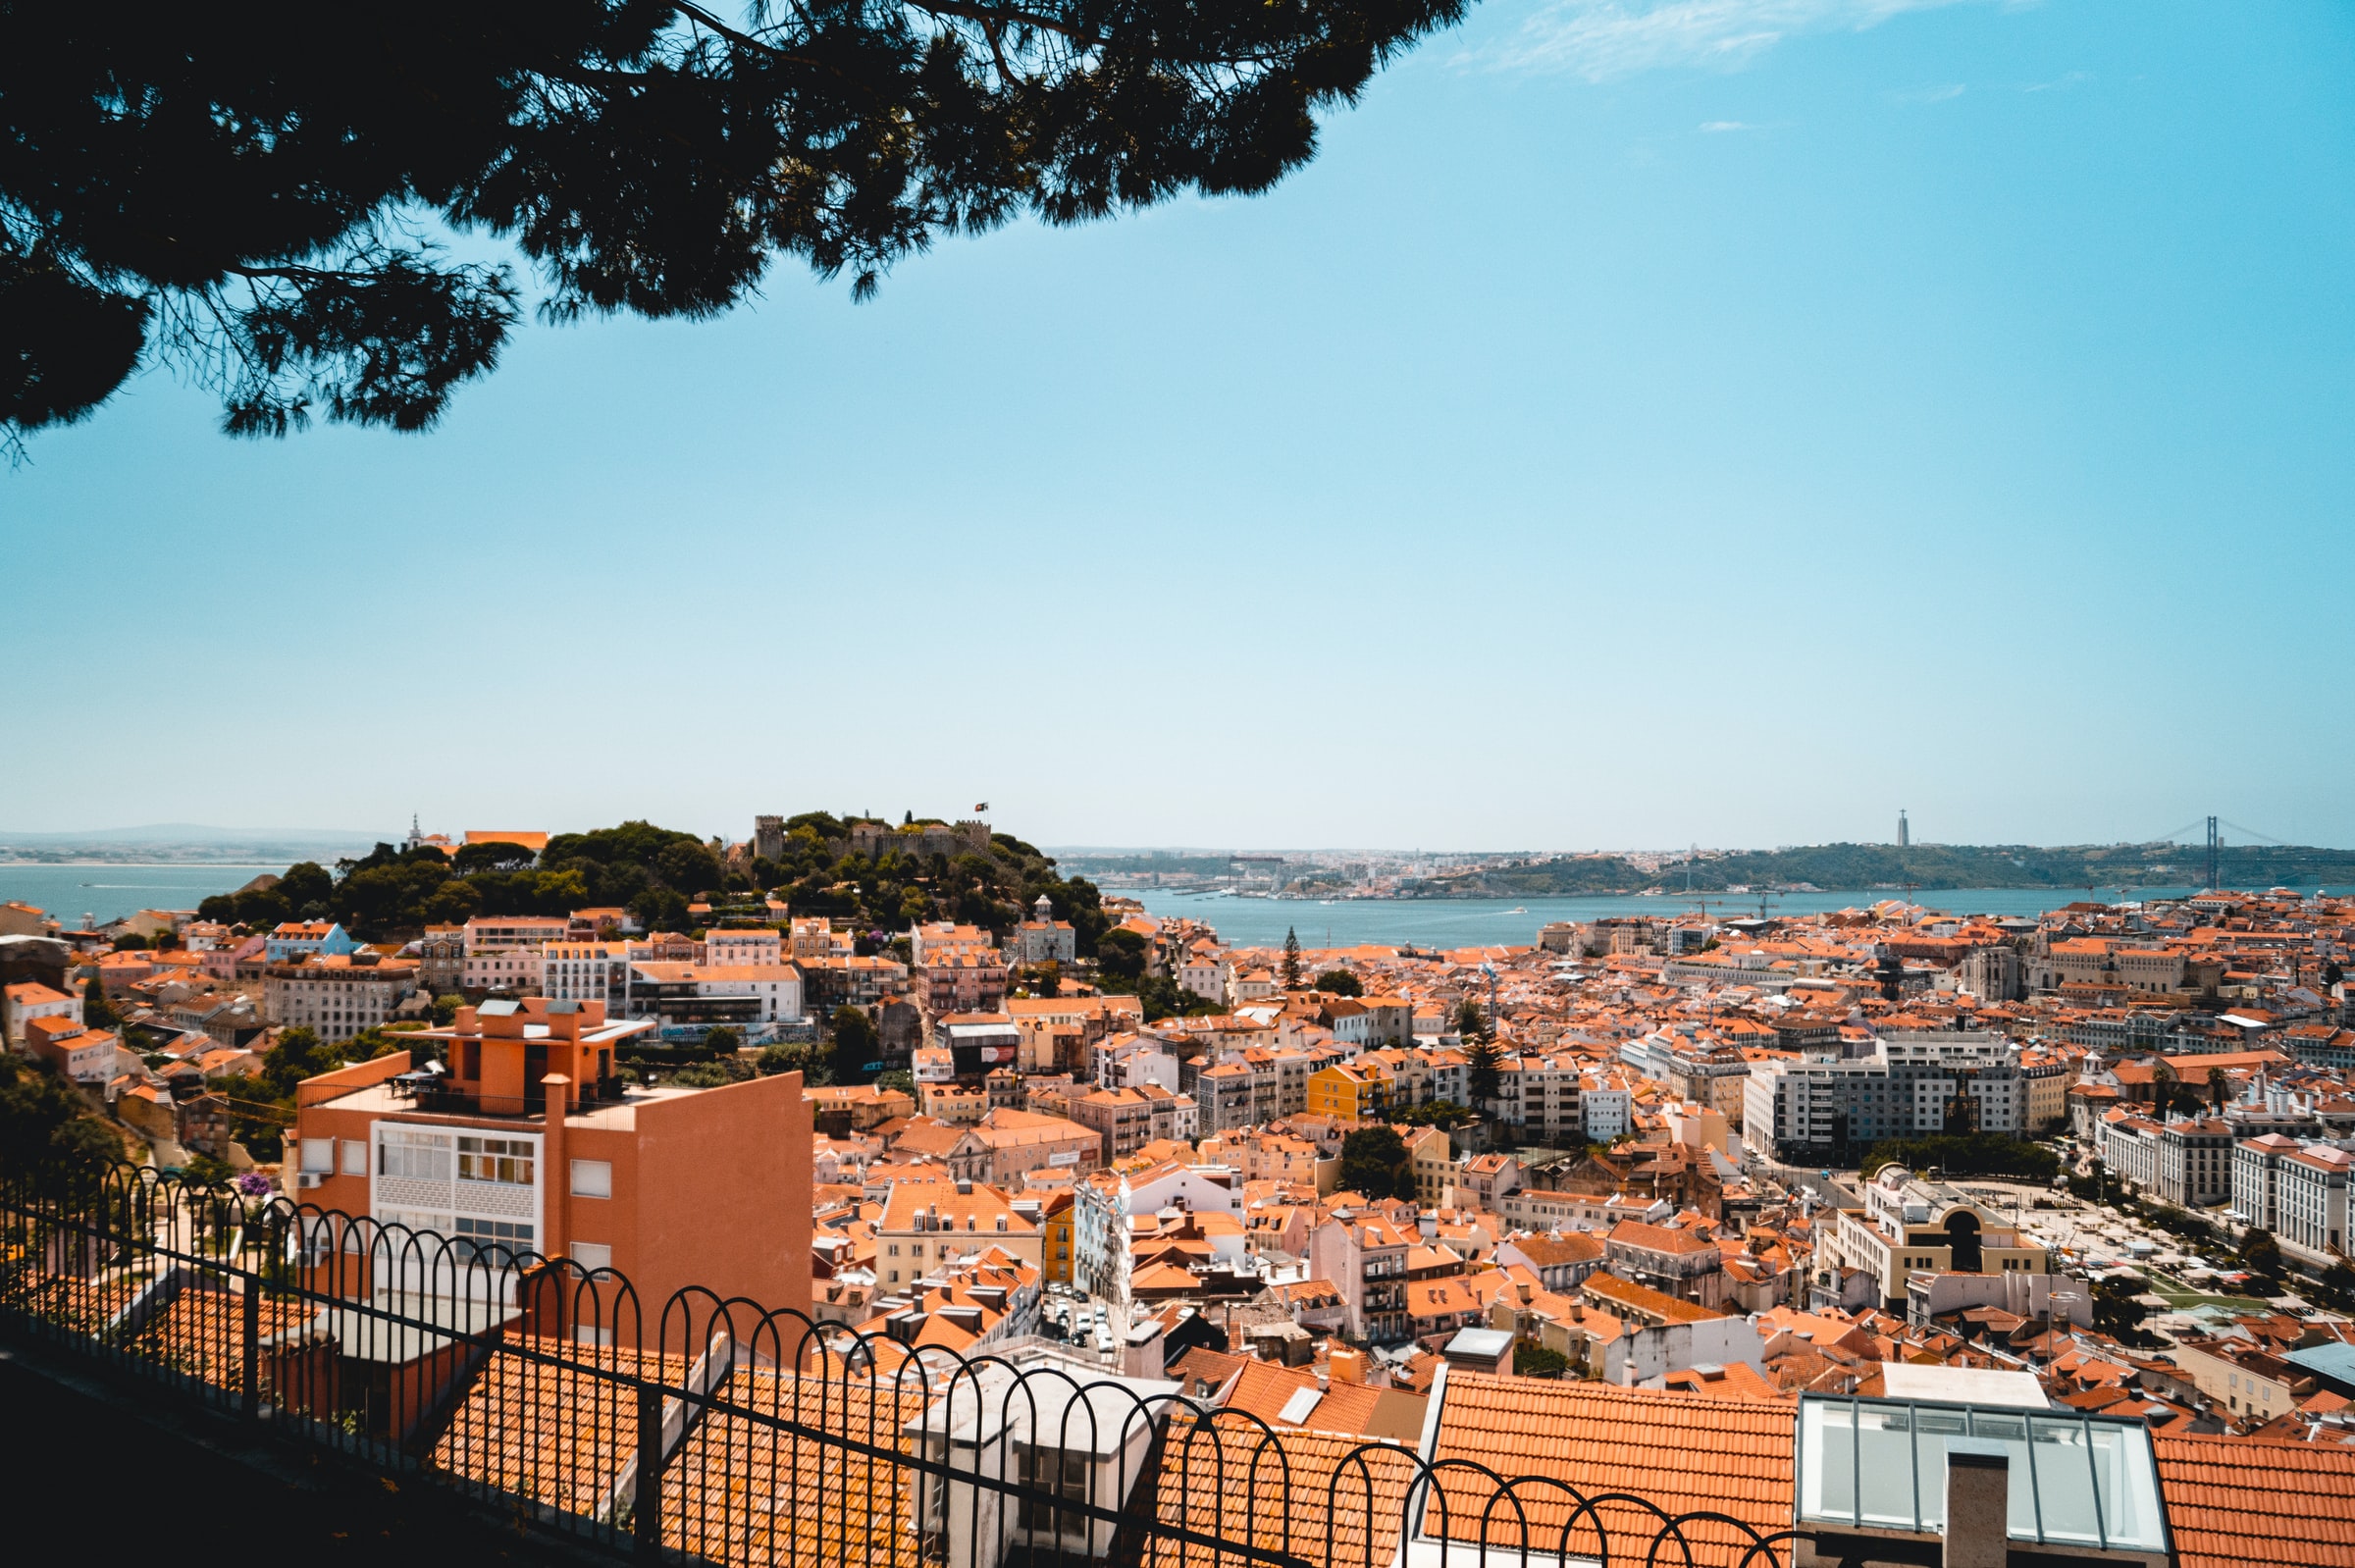 Morar em Portugal: cidades, cultura e mais!